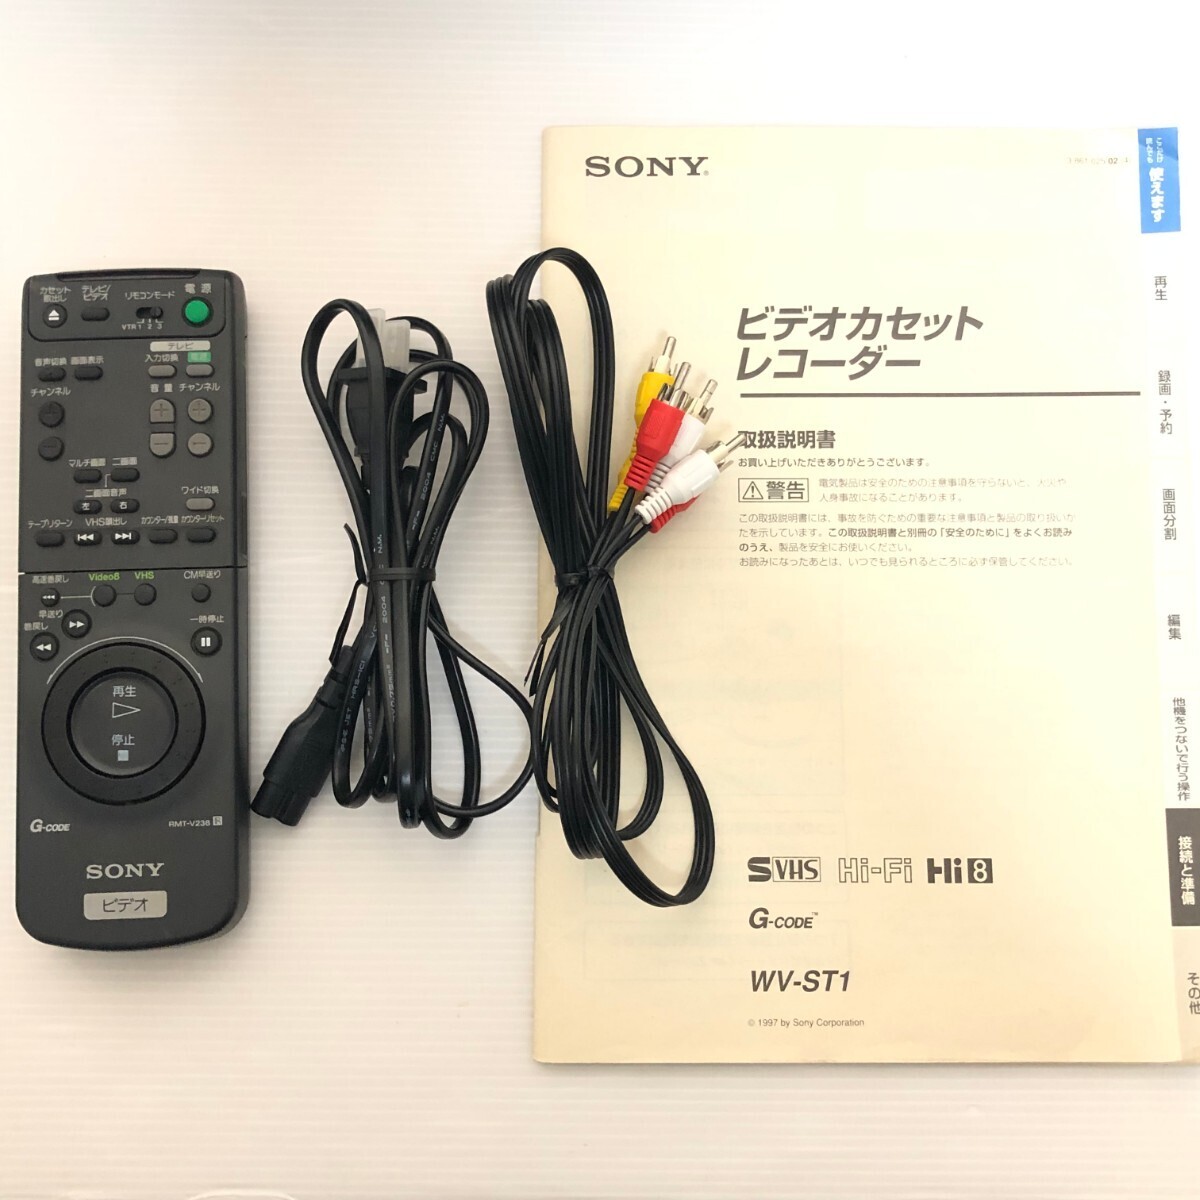 SONY WV-ST1 Hi8 S-VHS Wデッキ ダブルデッキ ビデオデッキ ソニー リモコンつき_画像6